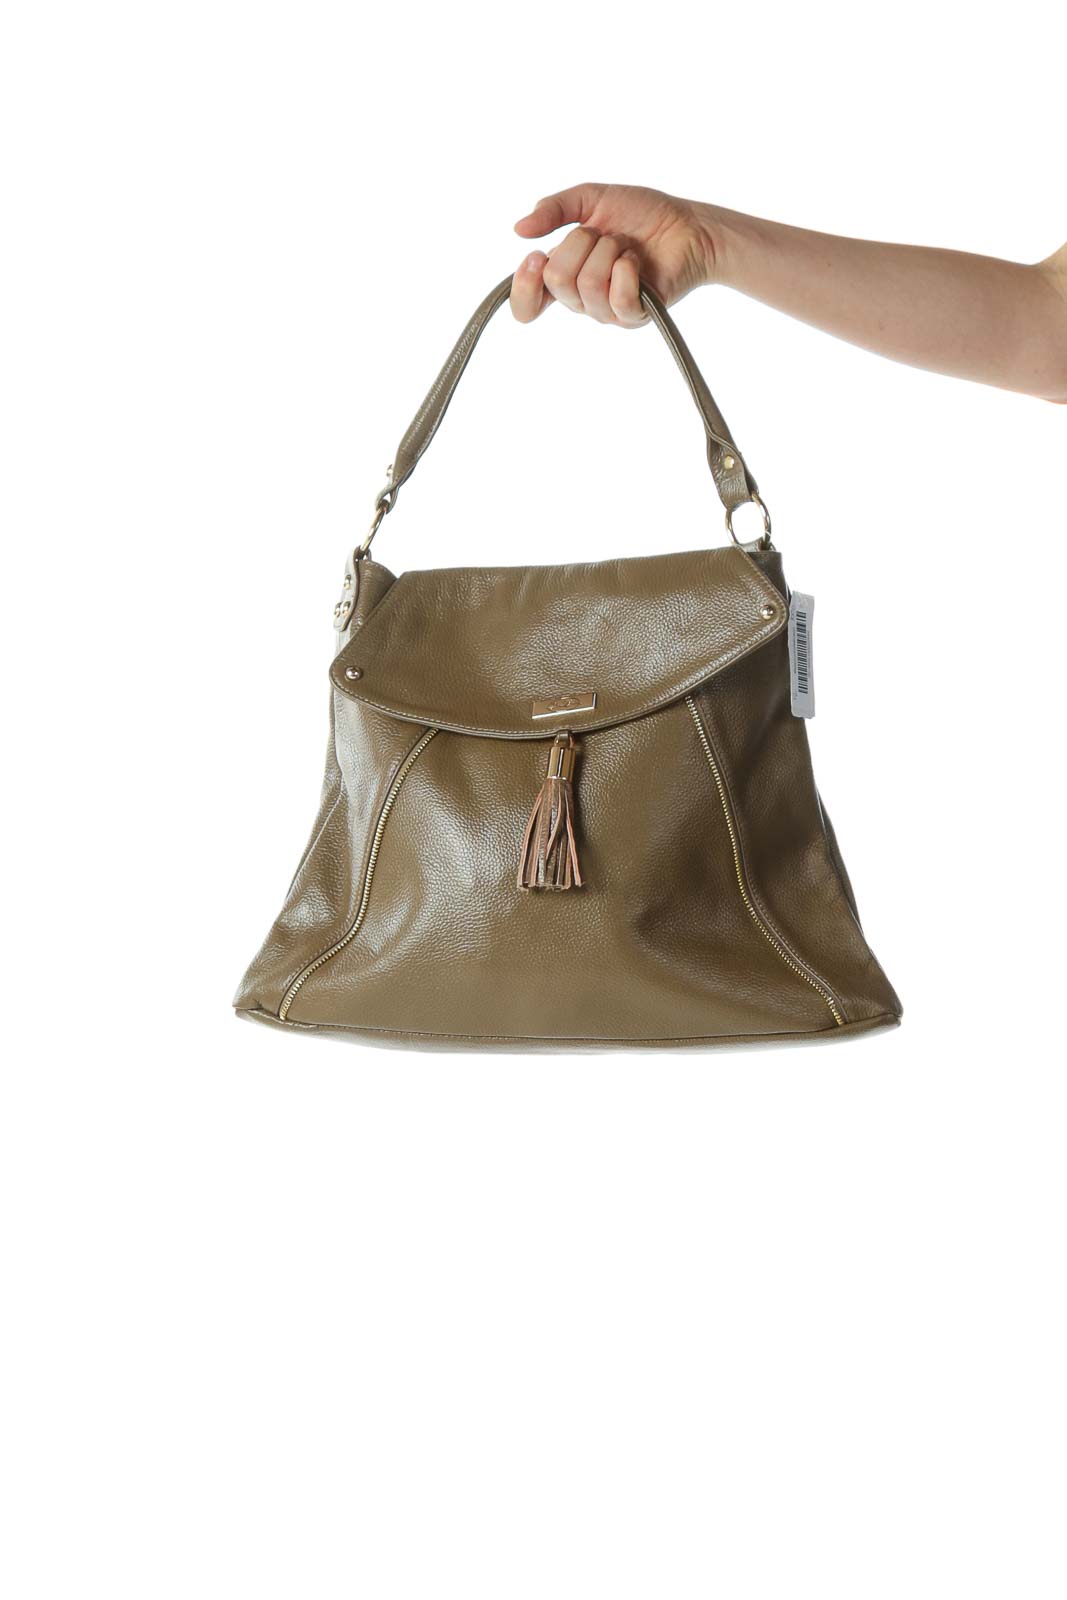 Olive Designer Tassel Shoulder Bag with Zipper and Hardware Embellishments  Front